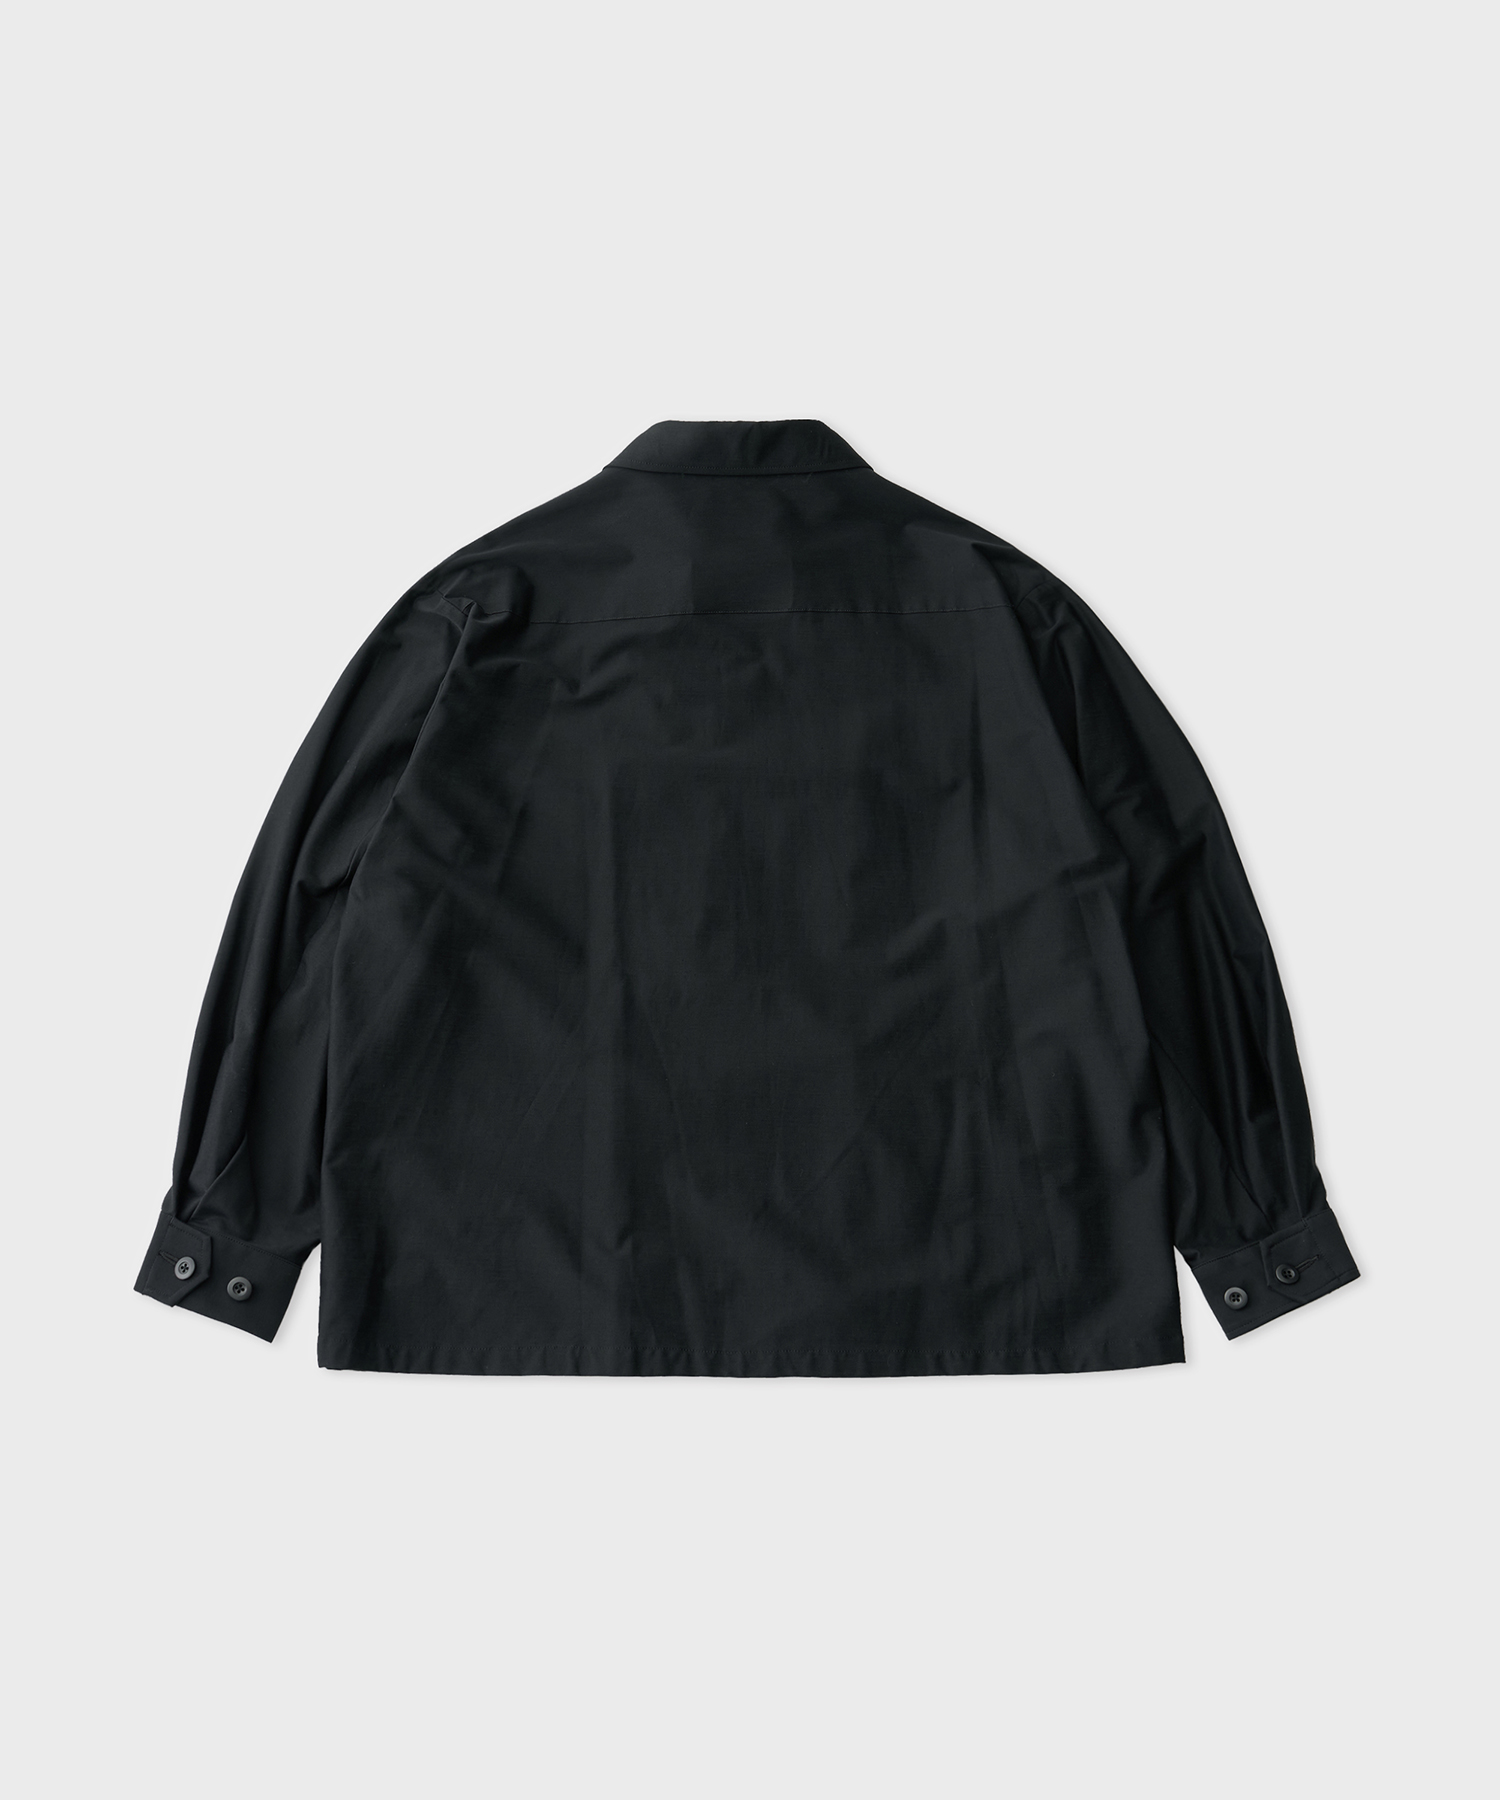 Typewriter High Gauge Jersey Fatig Jacket (Black)